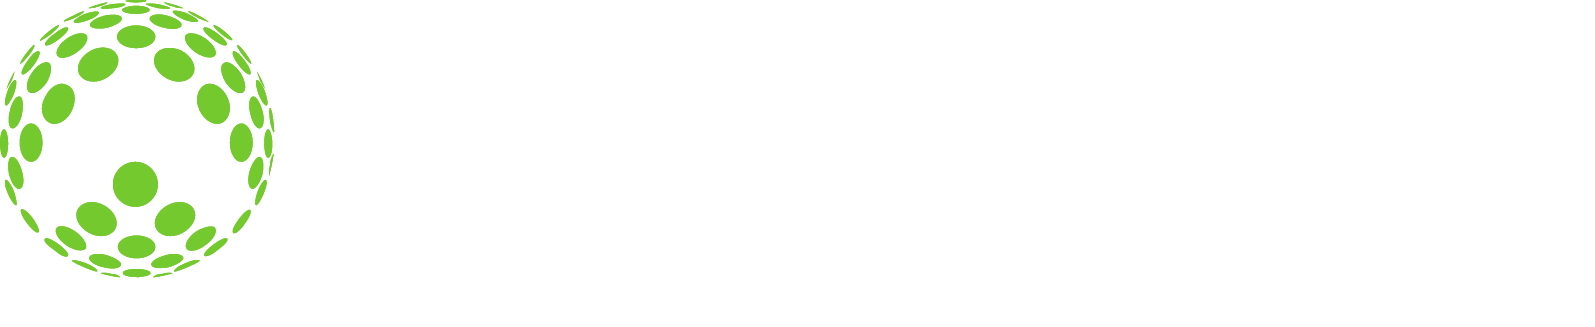 Allscripts logo large for dark backgrounds (transparent PNG)